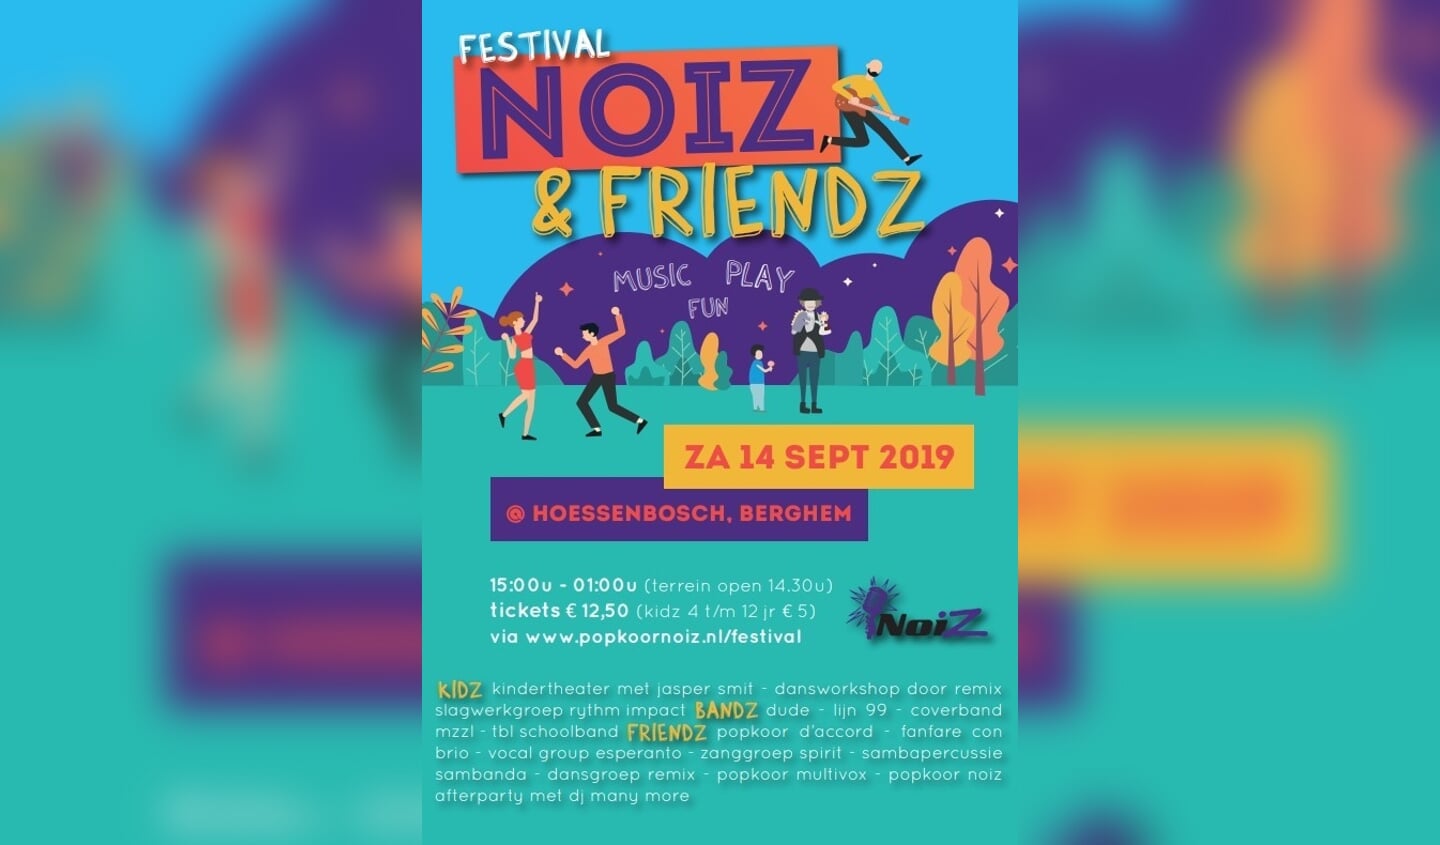 Popkoor Noiz viert 10-jarig jubileum met festival in Hoessenbosch